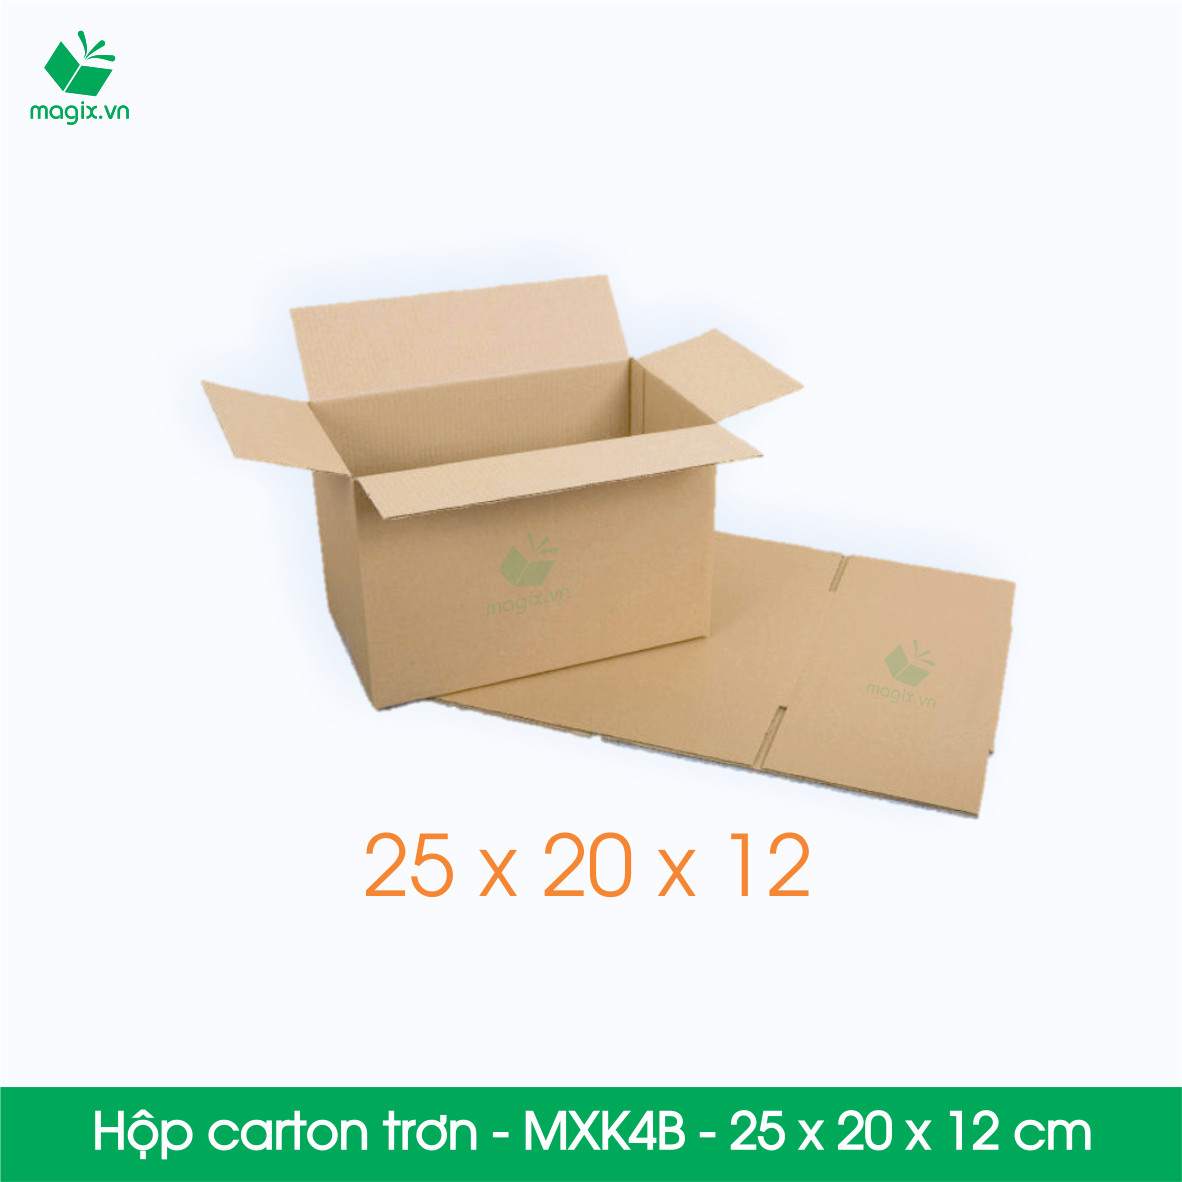 MXK4B - 25x20x12 cm - 20 Thùng hộp carton trơn đóng hàng